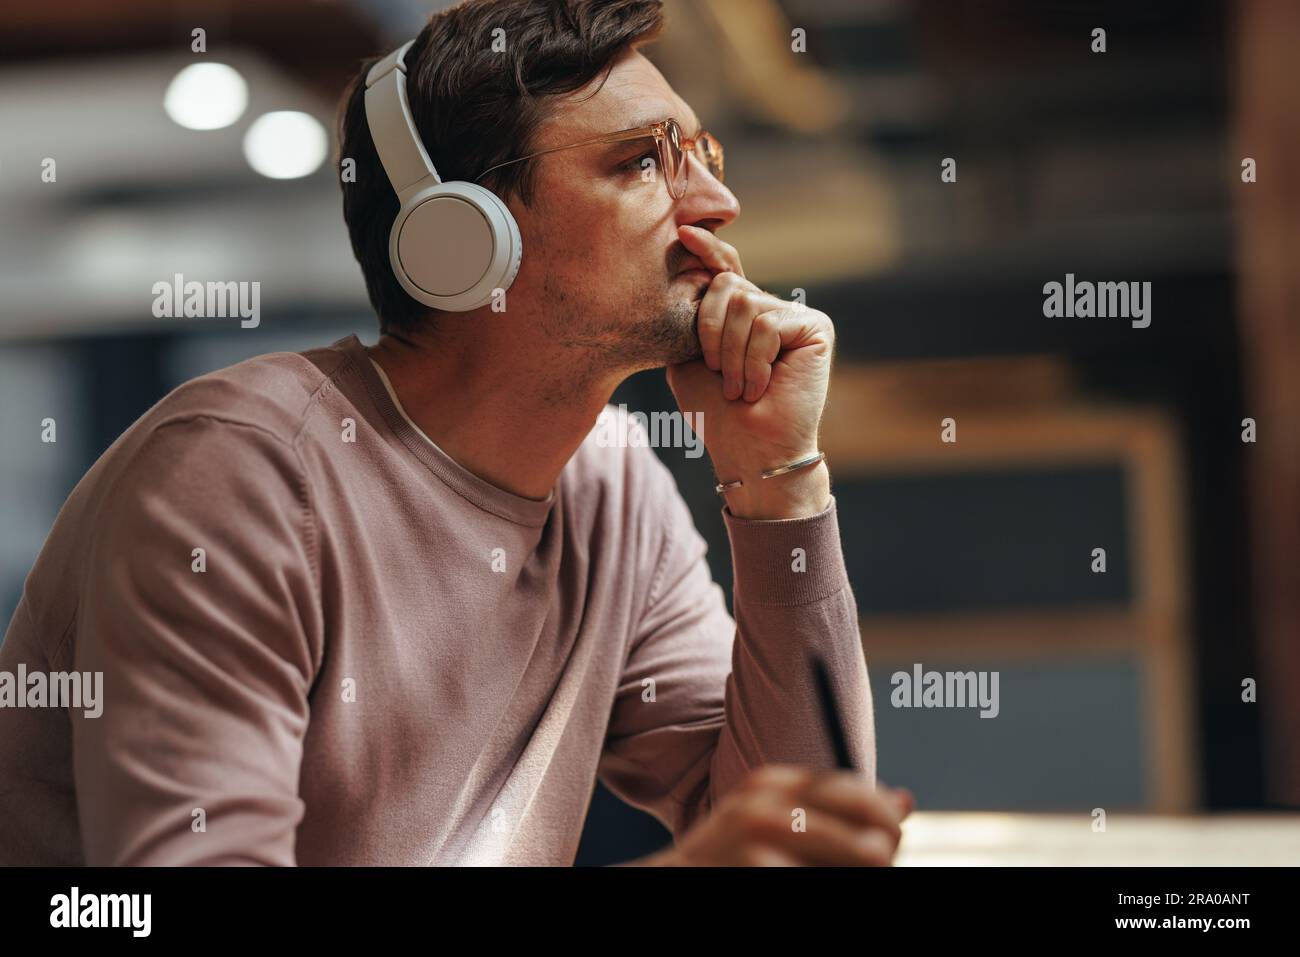 Designer denkt über sein Projekt nach, während er in einem Café sitzt. Professionelles Grafikdesign für Männer mit kabellosen Kopfhörern. Stockfoto